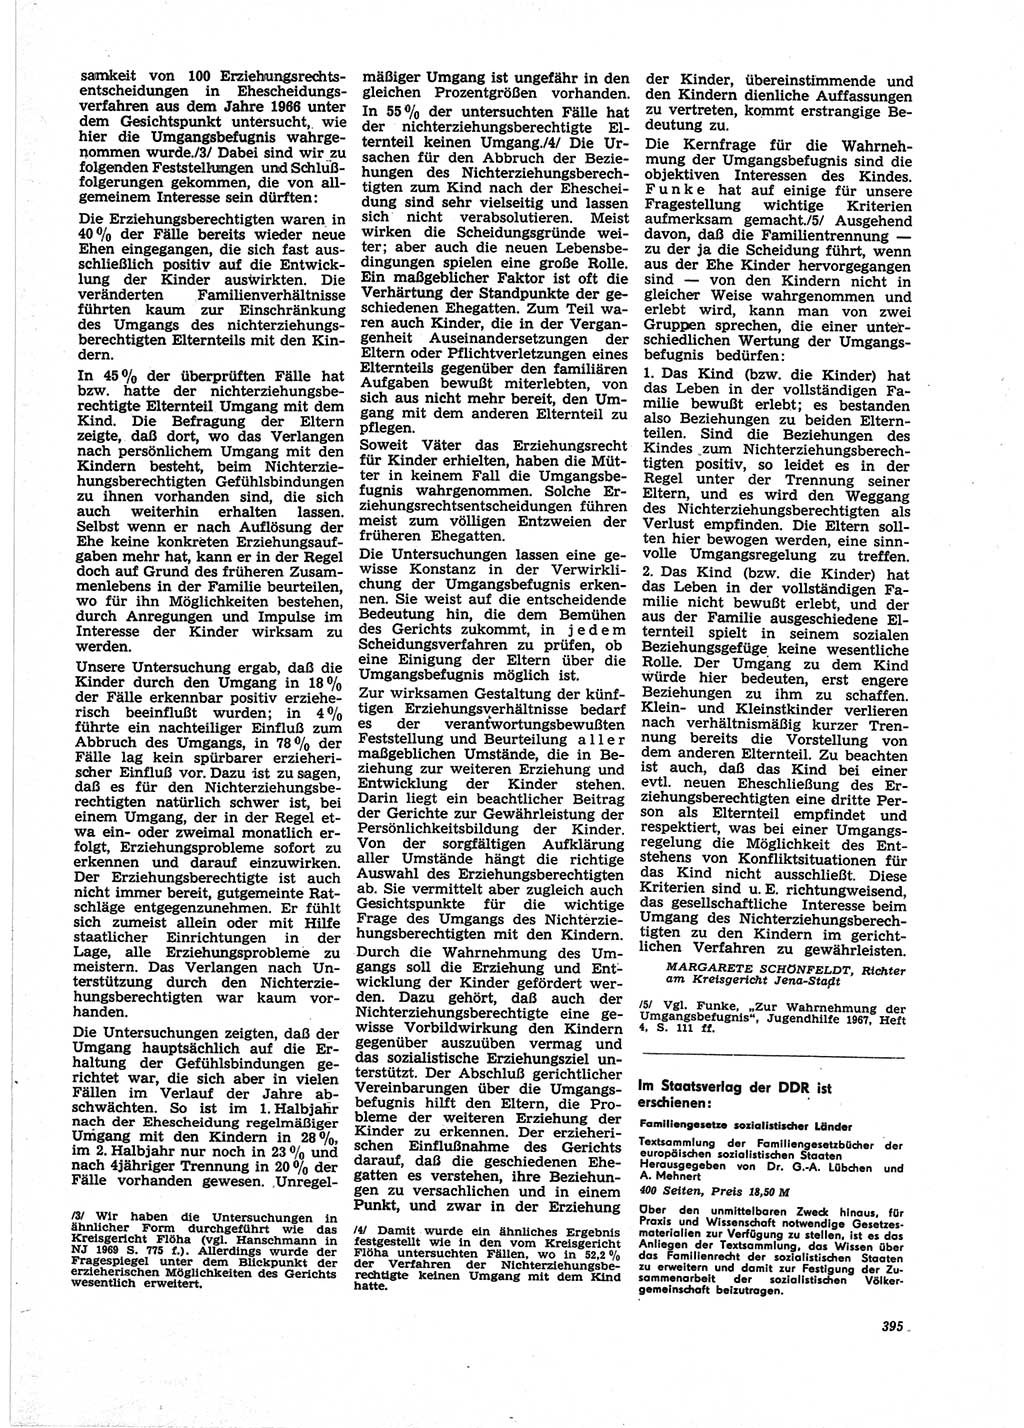 Neue Justiz (NJ), Zeitschrift für Recht und Rechtswissenschaft [Deutsche Demokratische Republik (DDR)], 25. Jahrgang 1971, Seite 395 (NJ DDR 1971, S. 395)